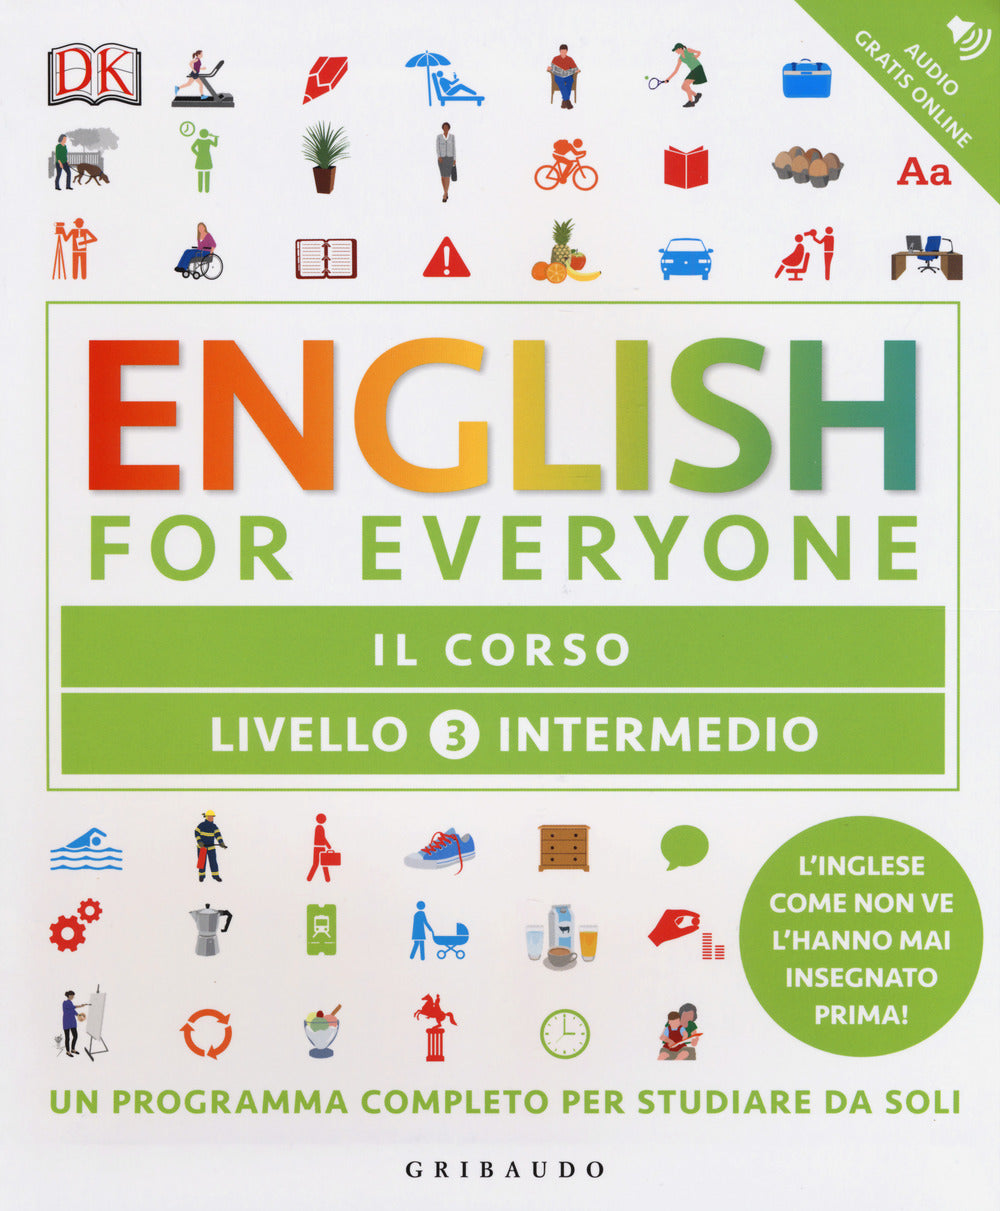 English for everyone. Livello 3° intermedio. Il corso.